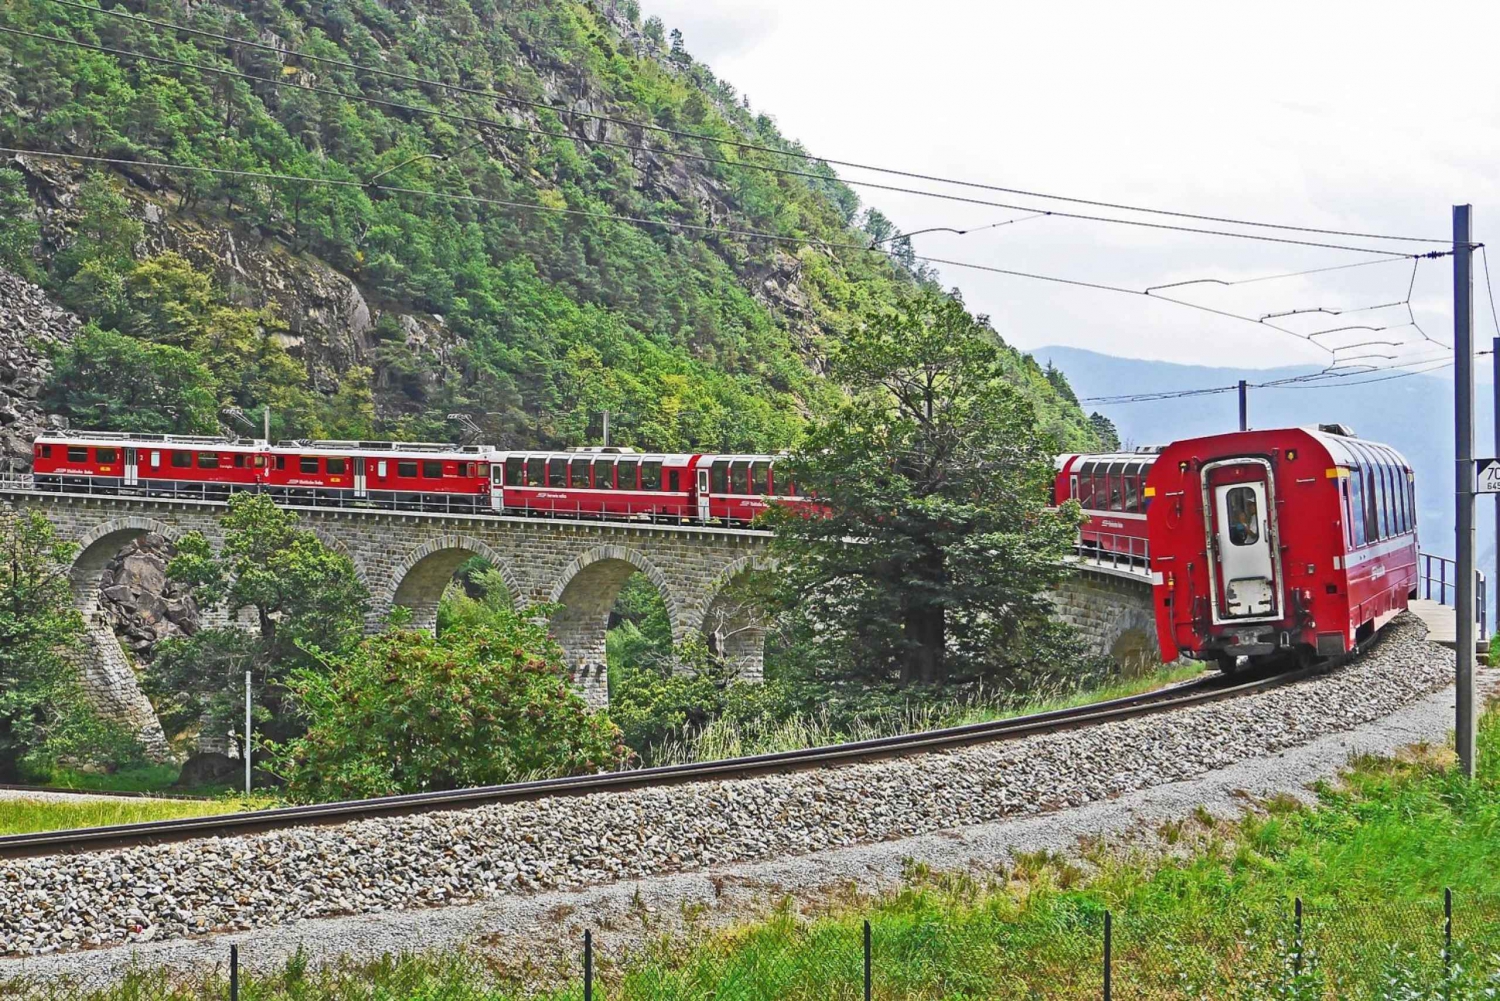 From Milan: Lake Como Cruise, St. Moritz & Bernina Red Train